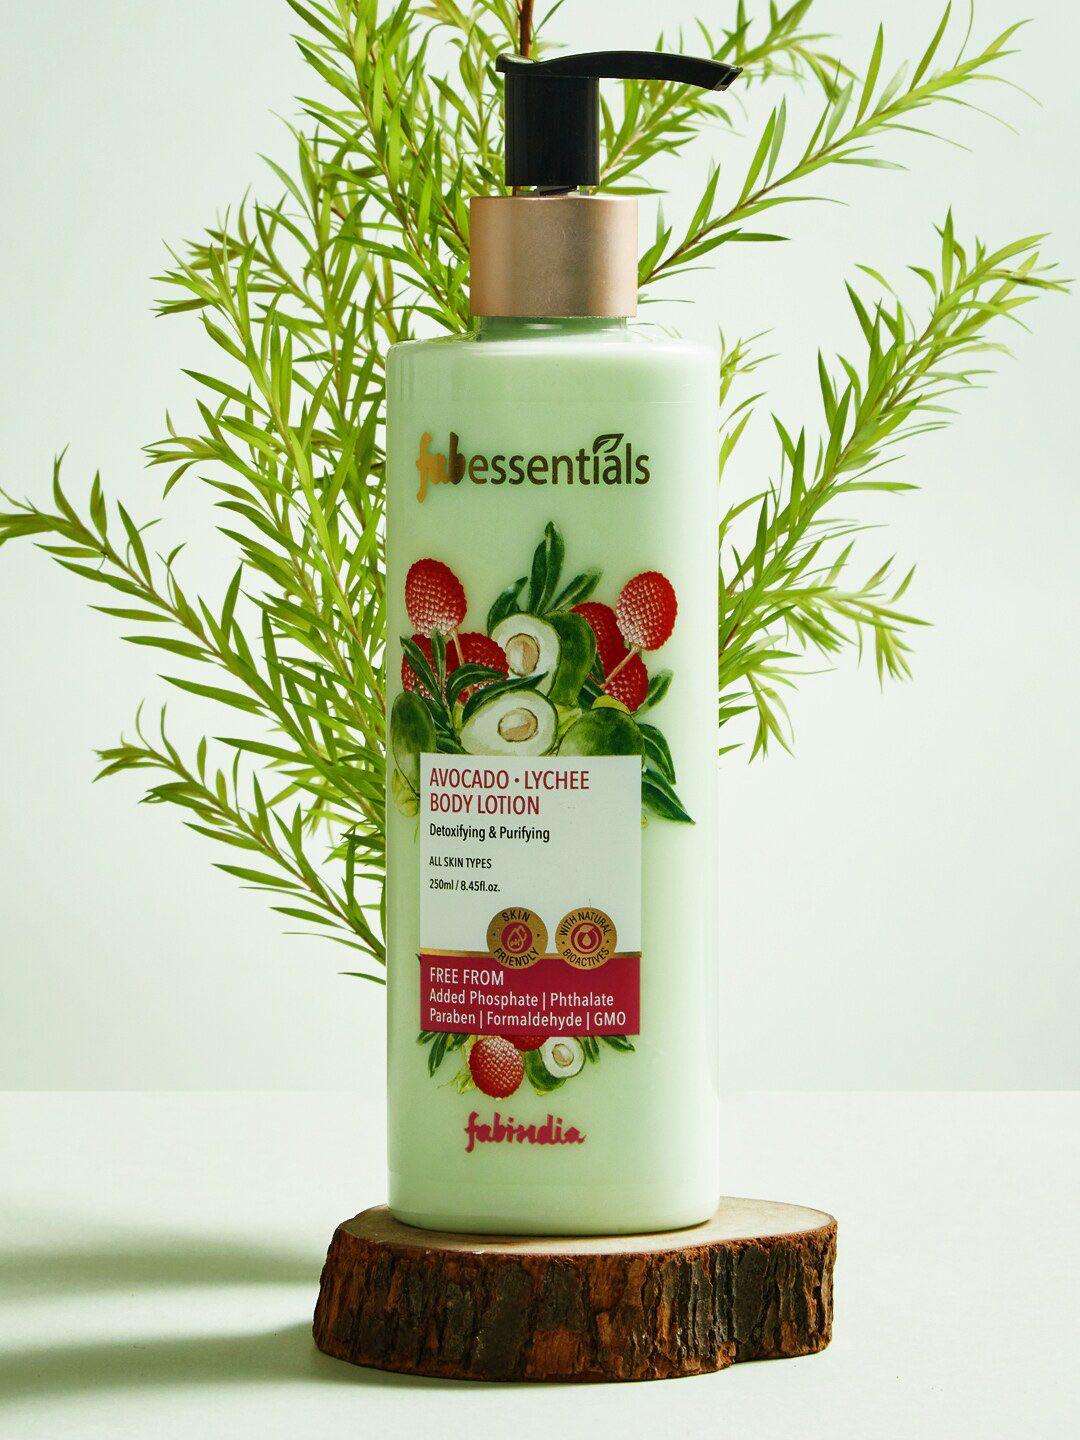 fabindia-avocado-lychee-body-lotion--250-ml